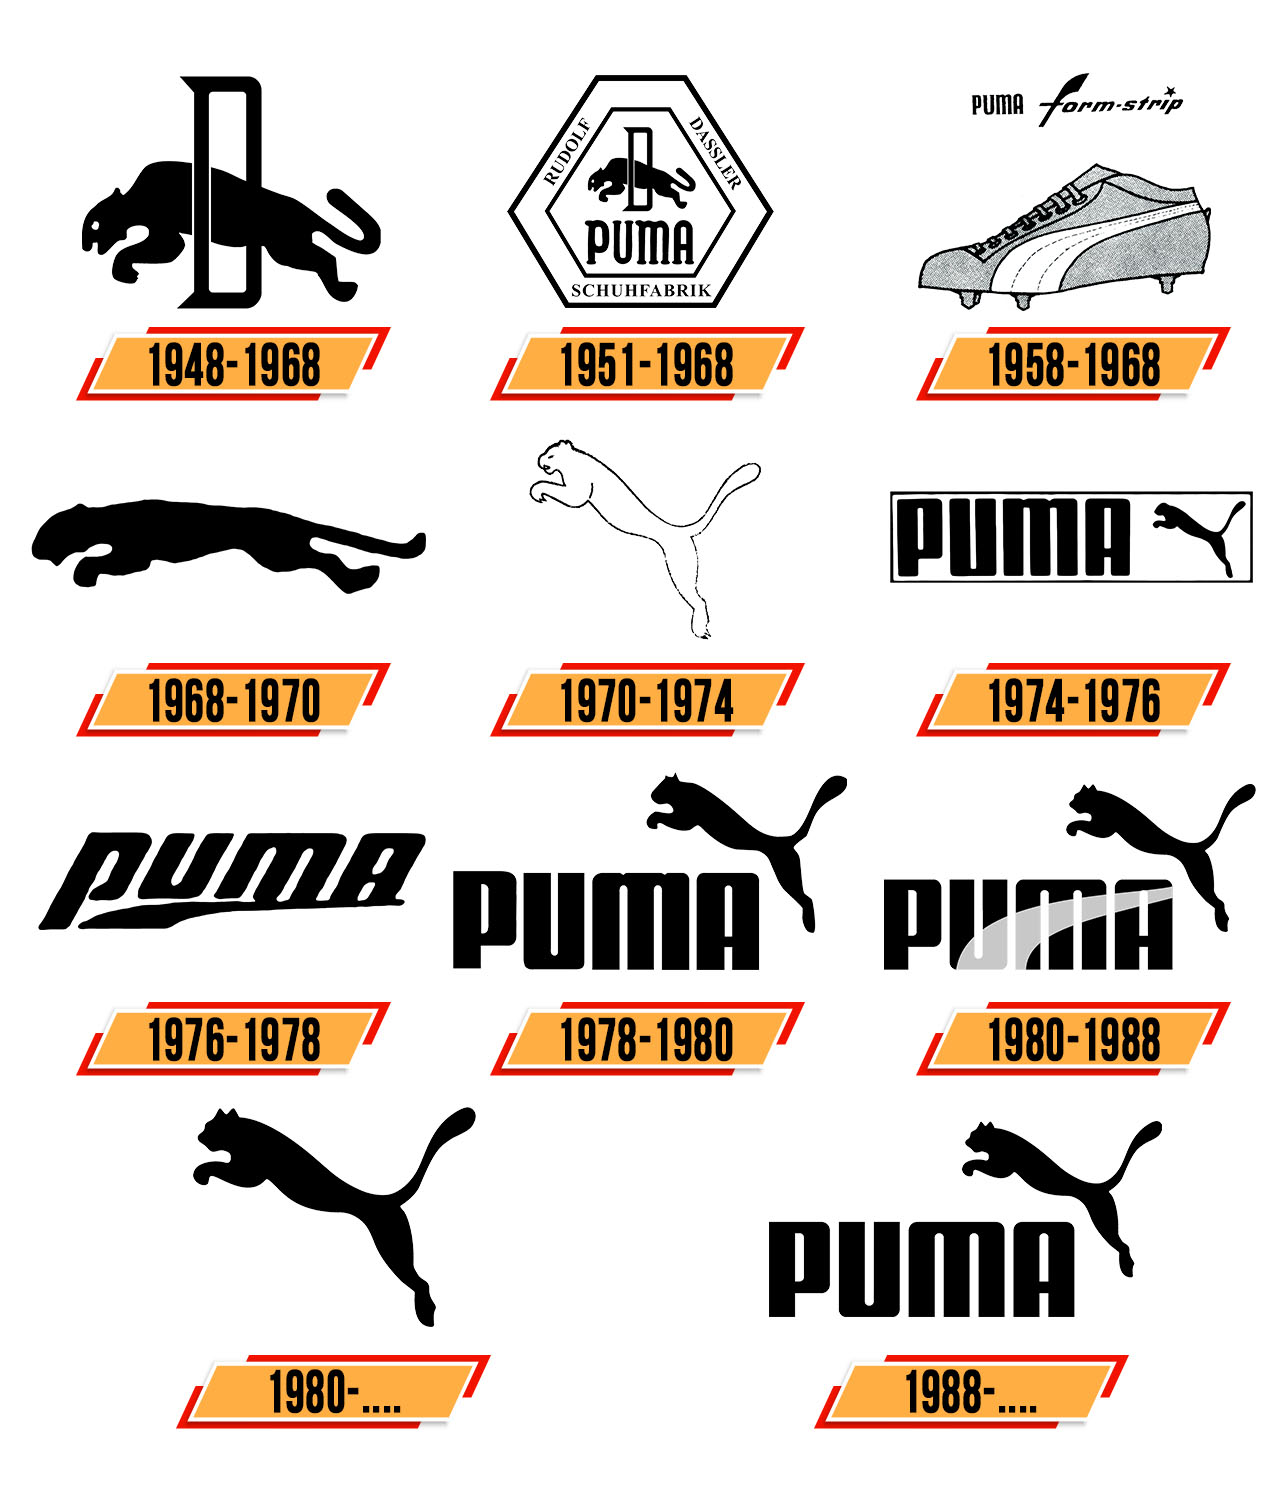 Geschichte Puma Und Adidas